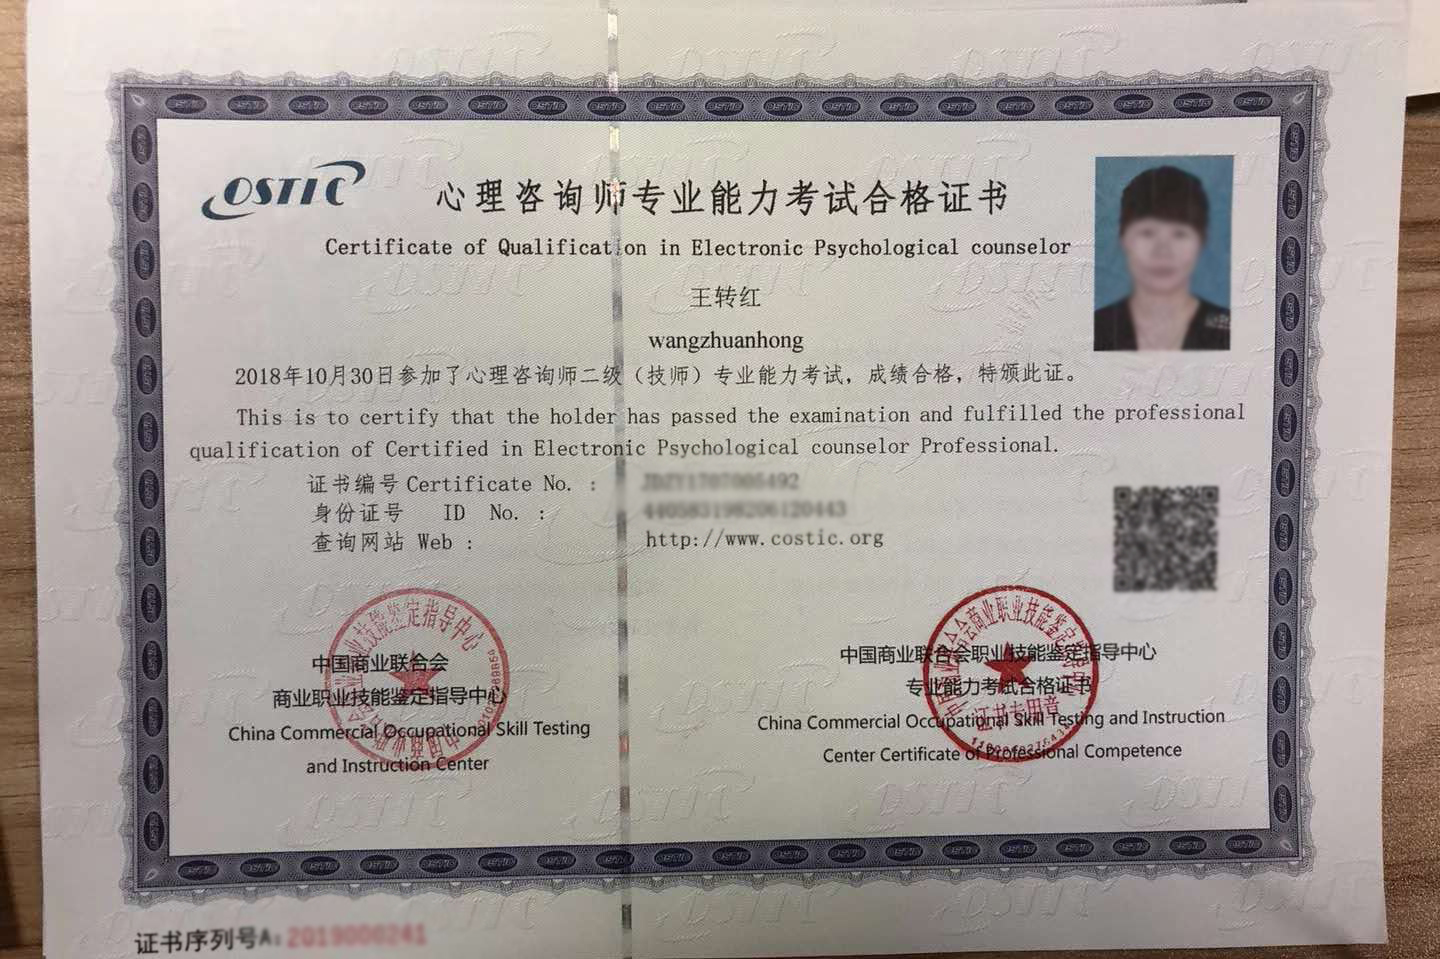 中国商业联合会商业职业技能鉴定证书是真的吗?